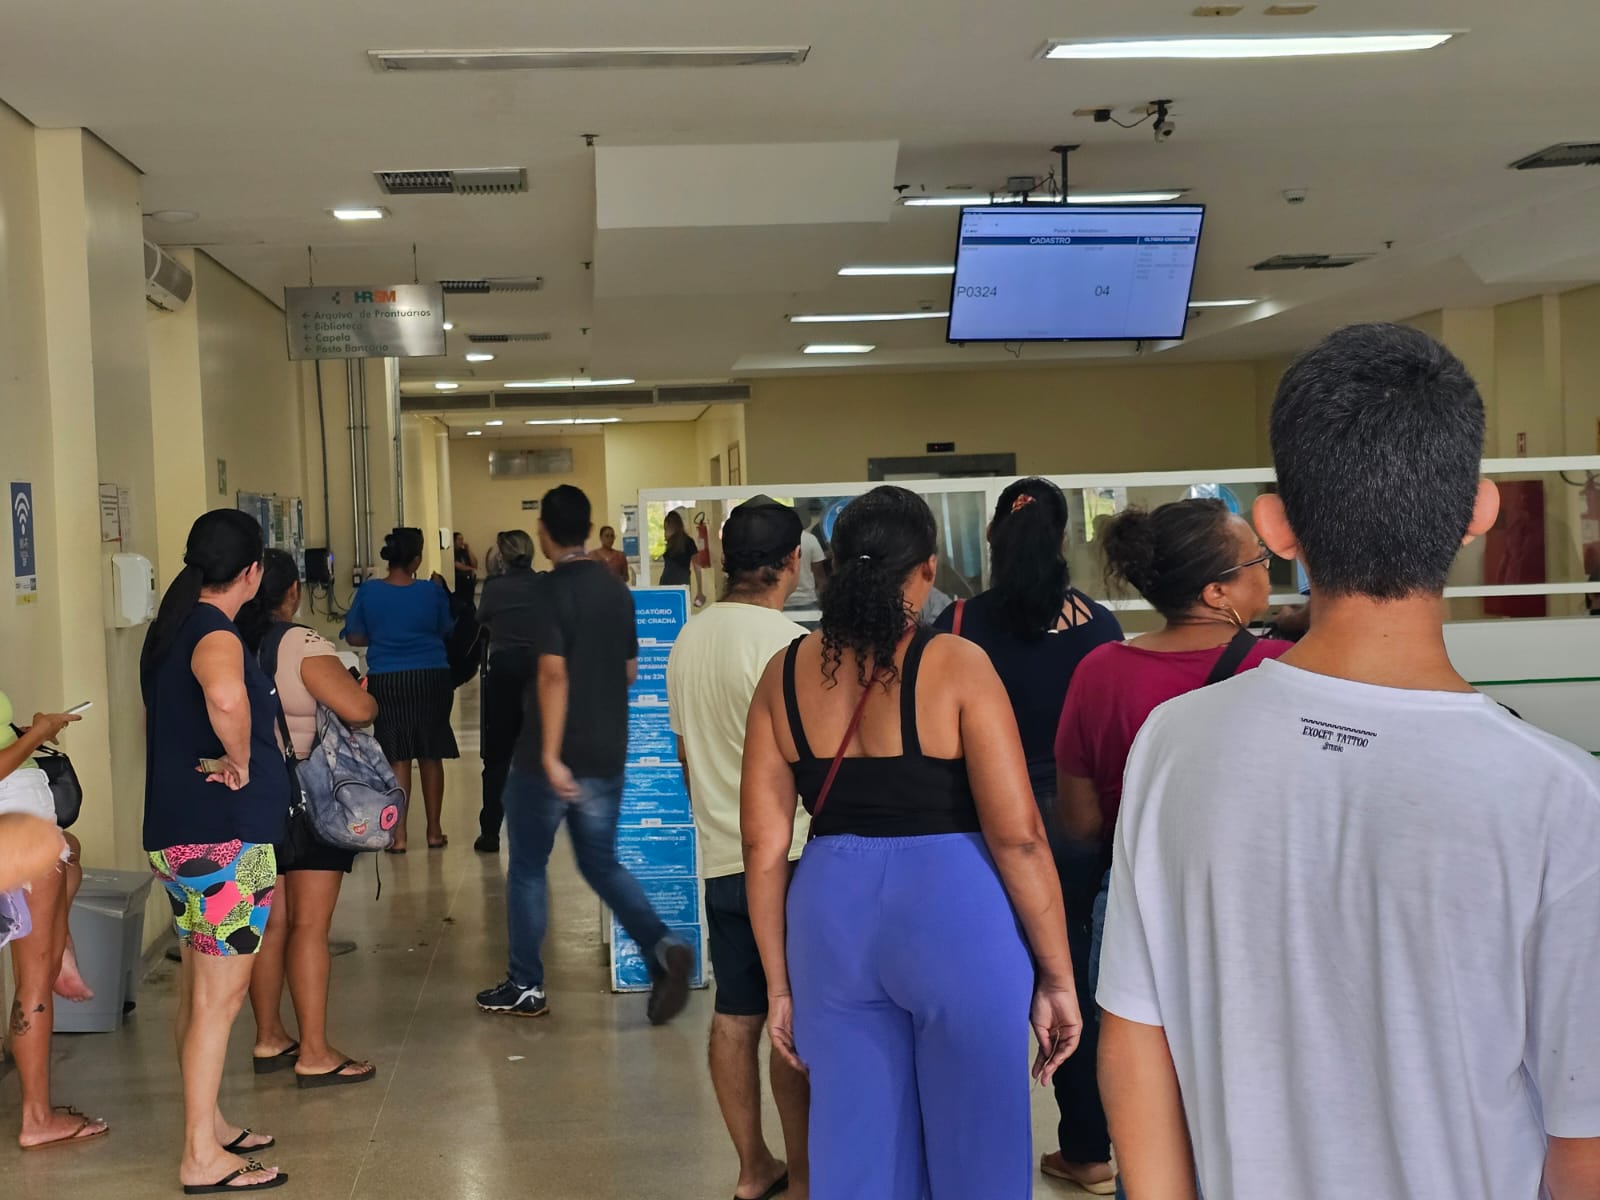 Hospital Regional de Santa Maria estende horário para troca de acompanhantes